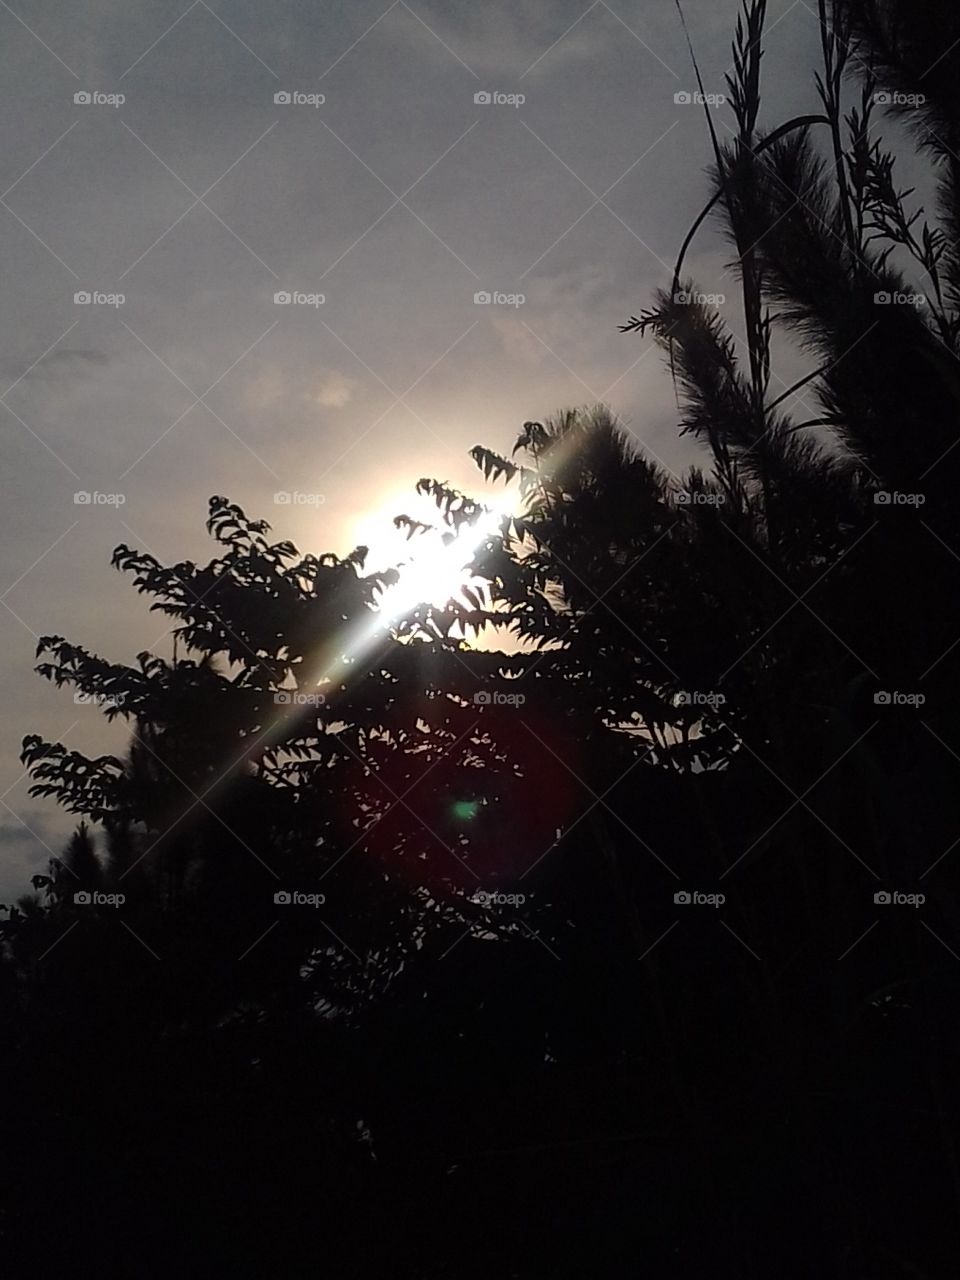 Sun Light..
Kandy Mahakande Sri Lanka..